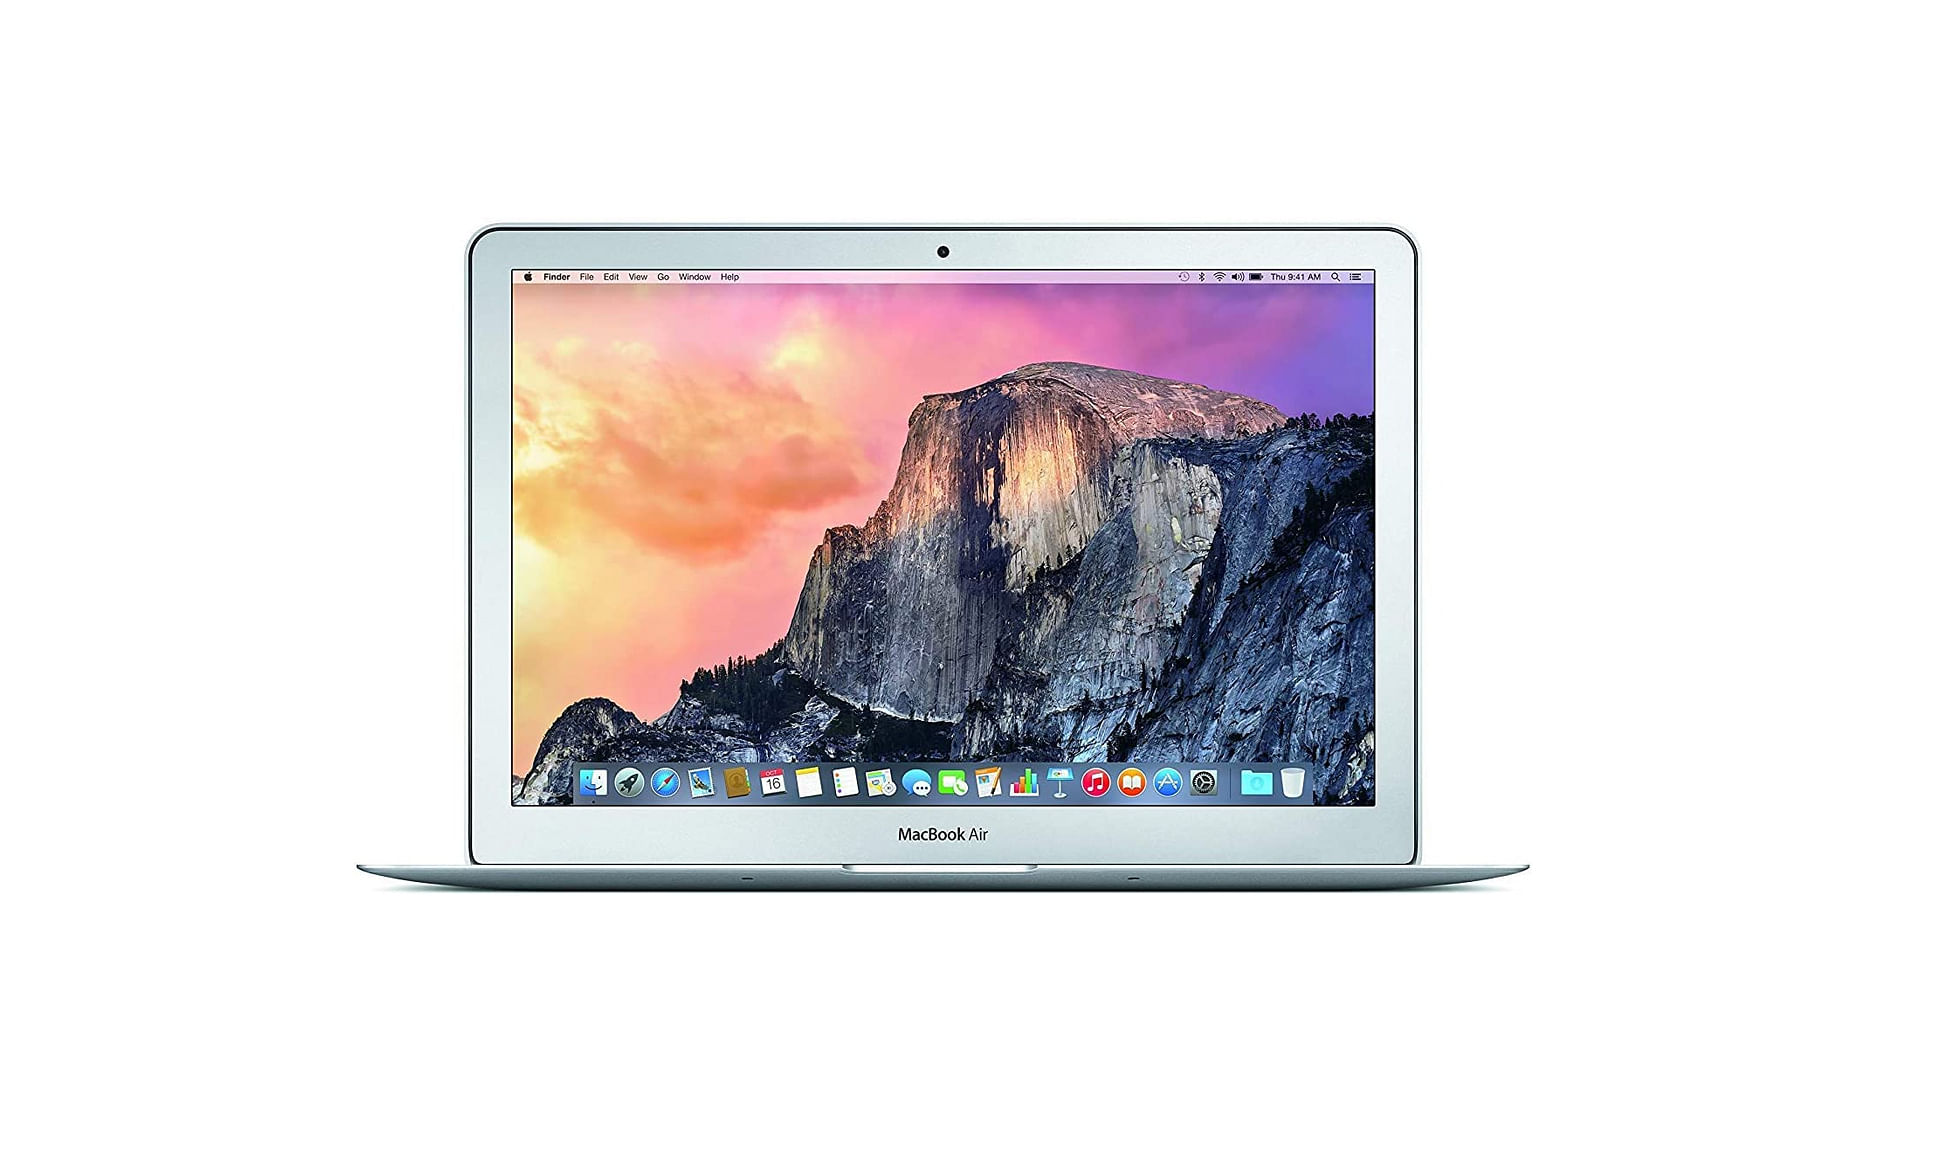 Apple MacBook Air (A1369)2011 core i5 1.7GHz 13.3-inch 4GB RAM 